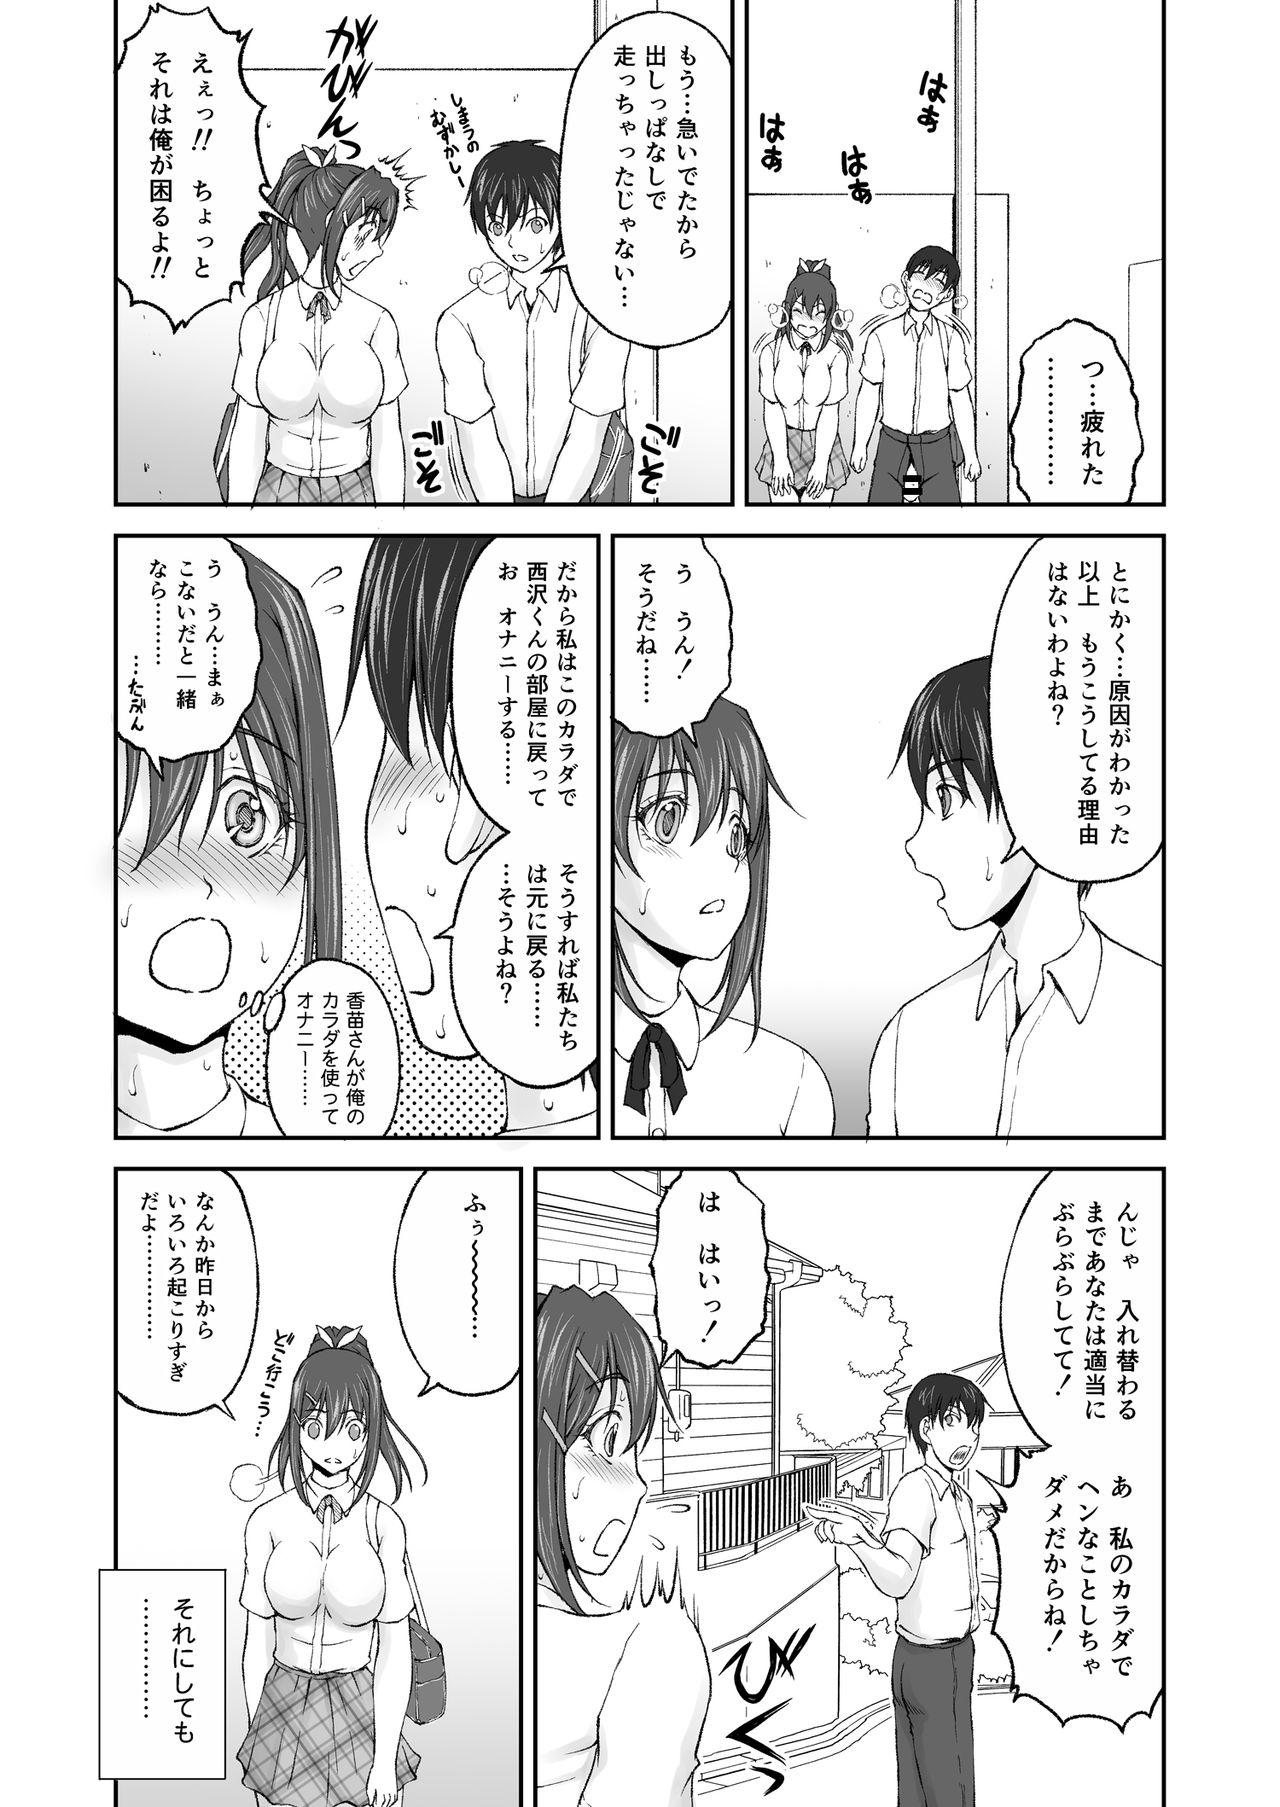 [Sakaki Naomoto] Zoku Hokago Nikutai Chenji ! - Afterschool (S)exchange! Cont'd 9